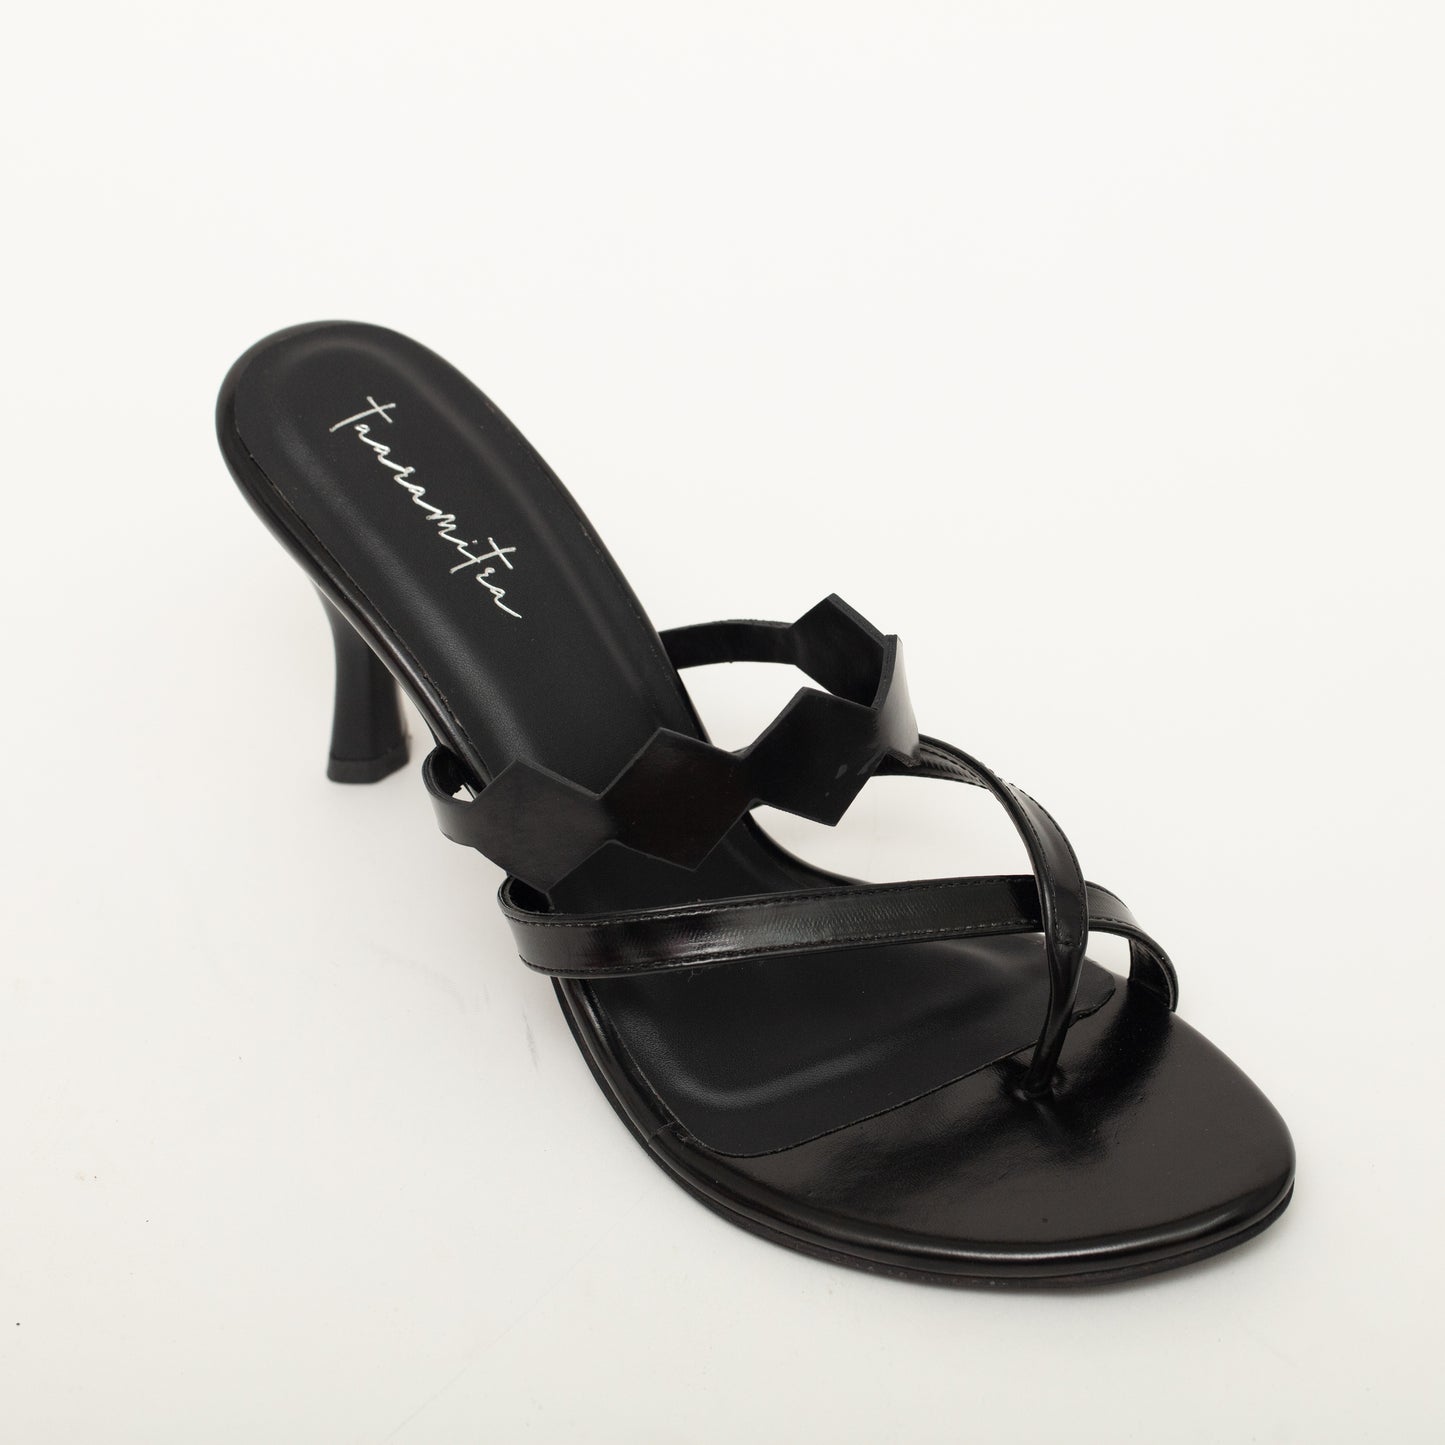 Elegante noir heels in black